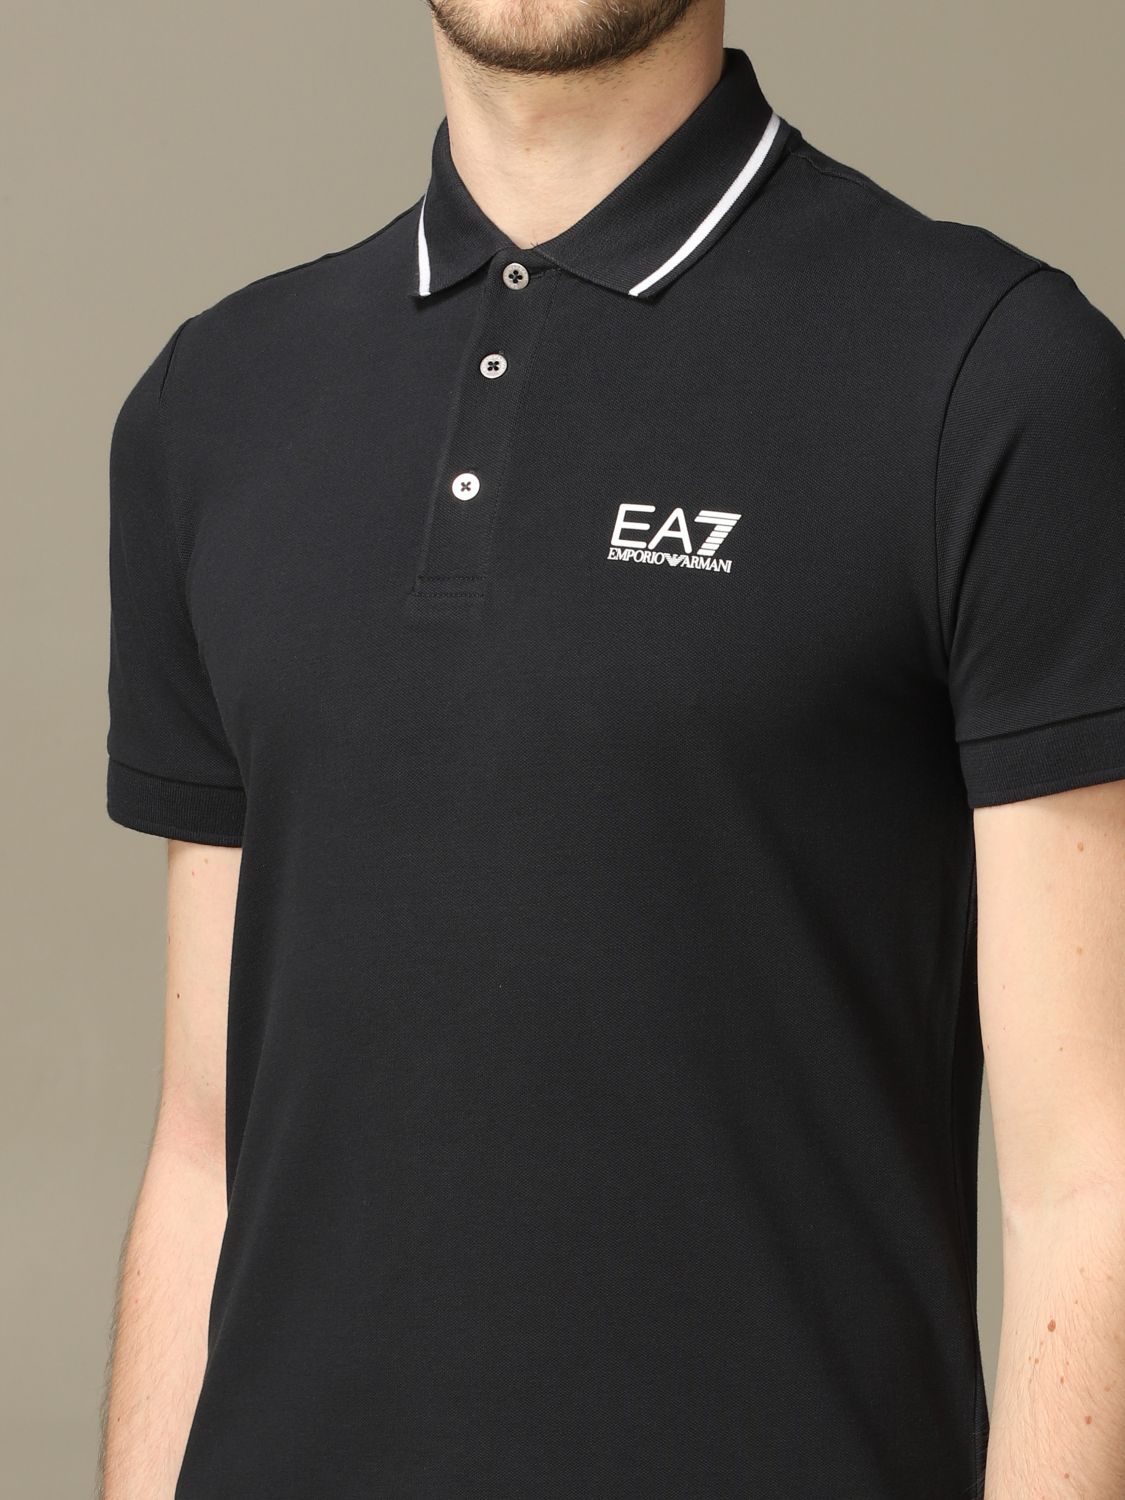 ea7 t shirt polo